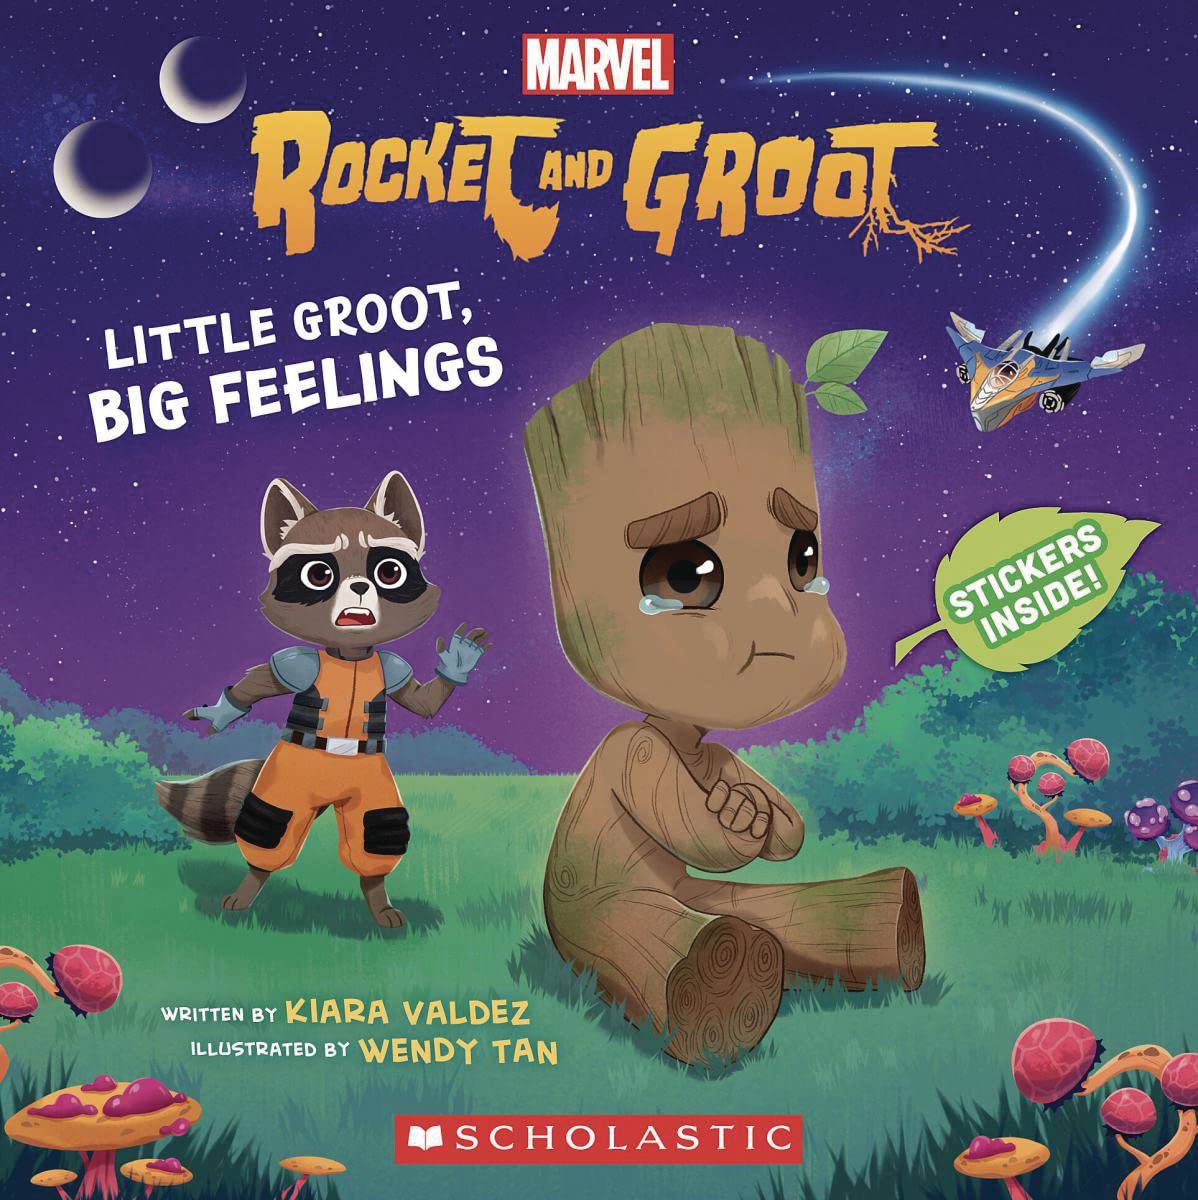 MARVEL ROCKET & GROOT STORYBOOK LITTLE GROOT BIG FEELING